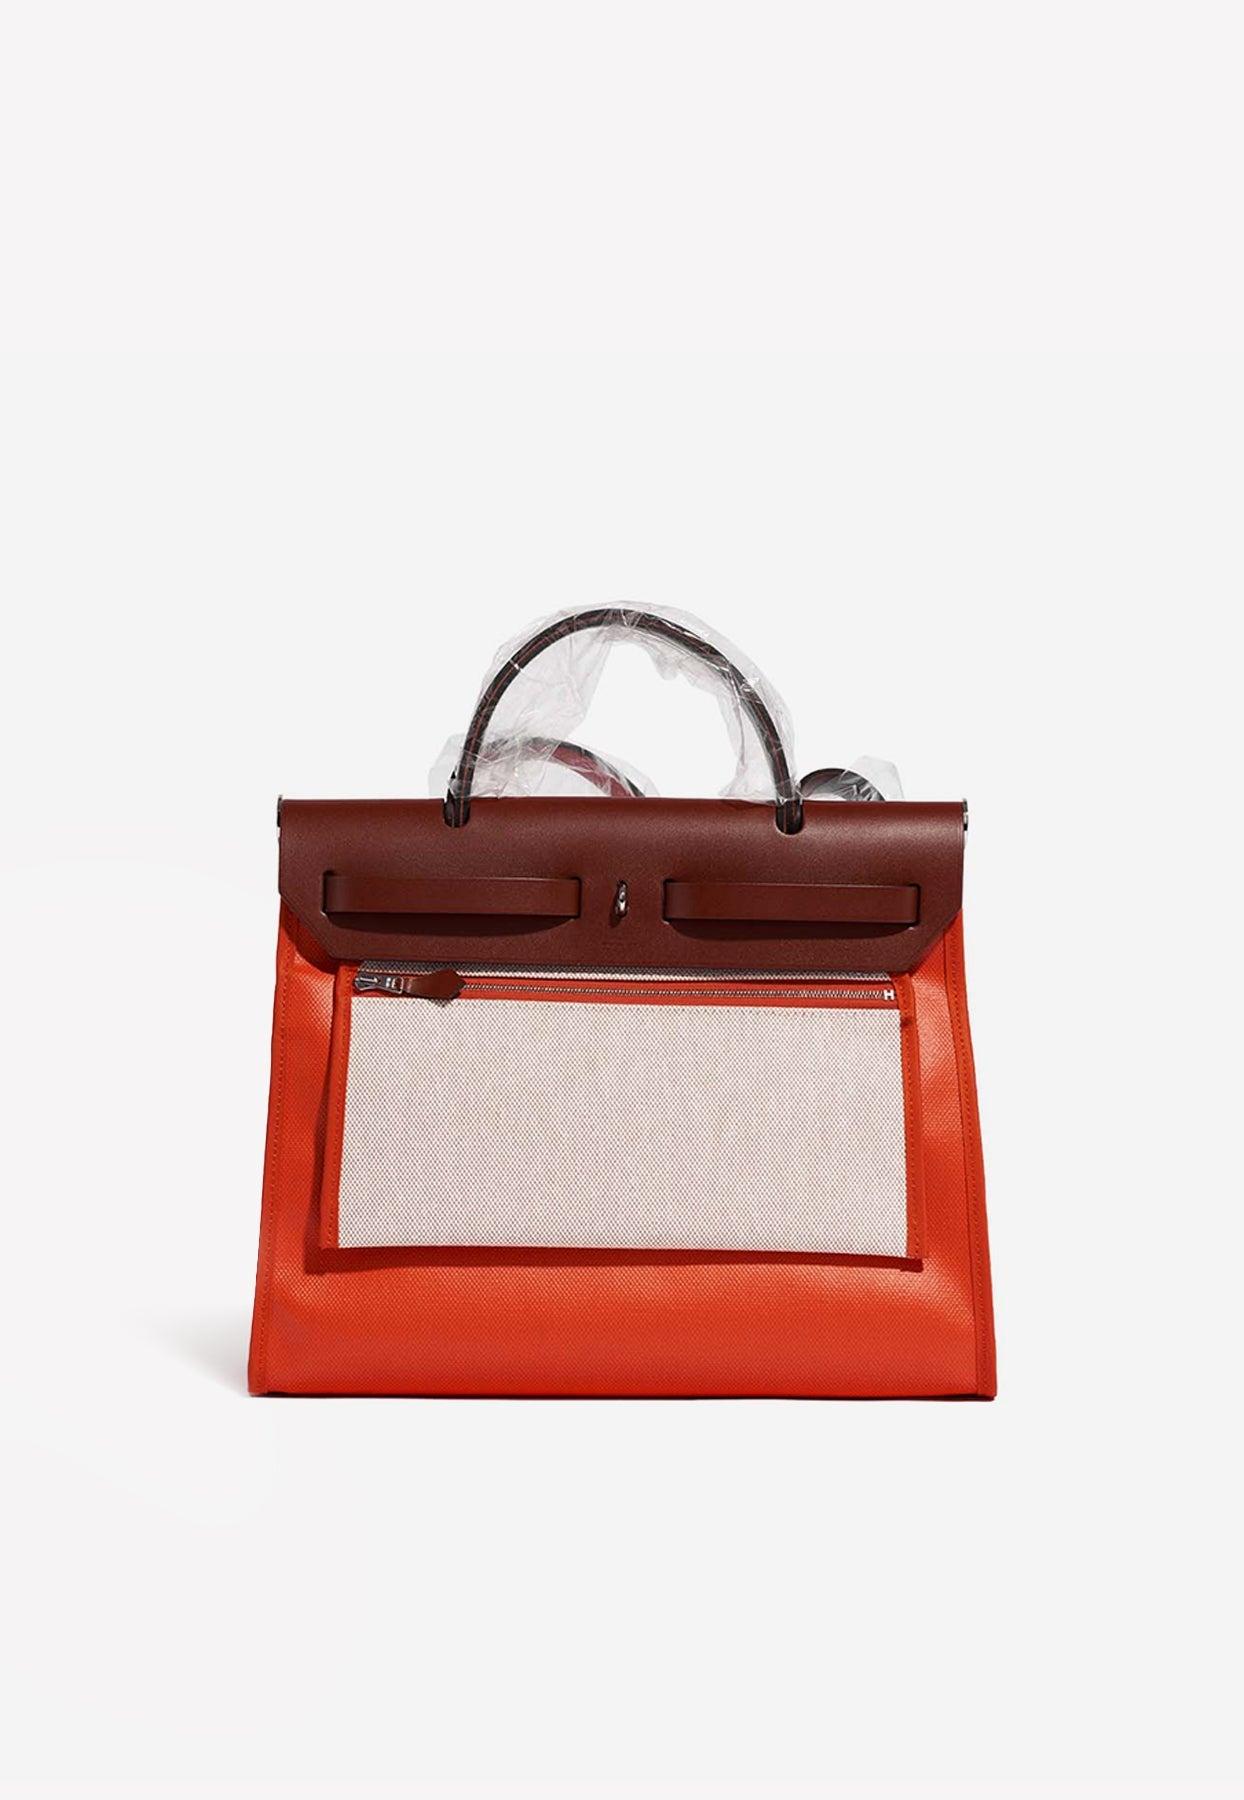 Hermes Orange Togo Leather Cacahuete Bag - Yoogi's Closet